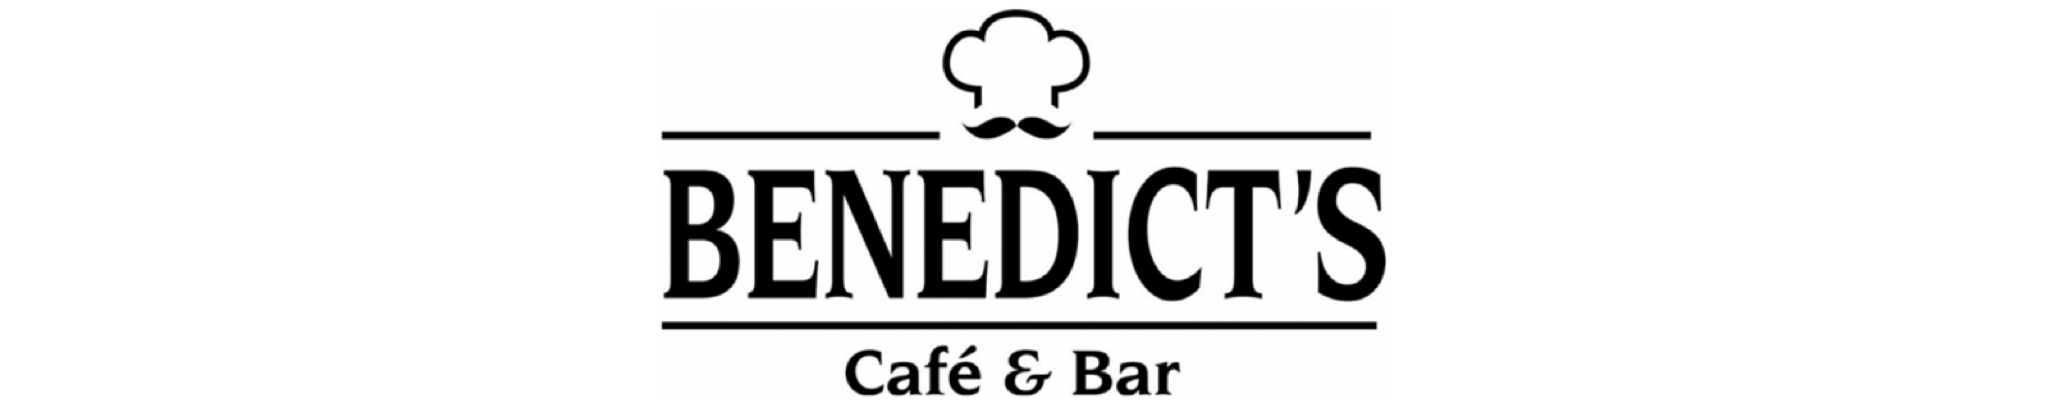 Benedict's Cafe & Bar